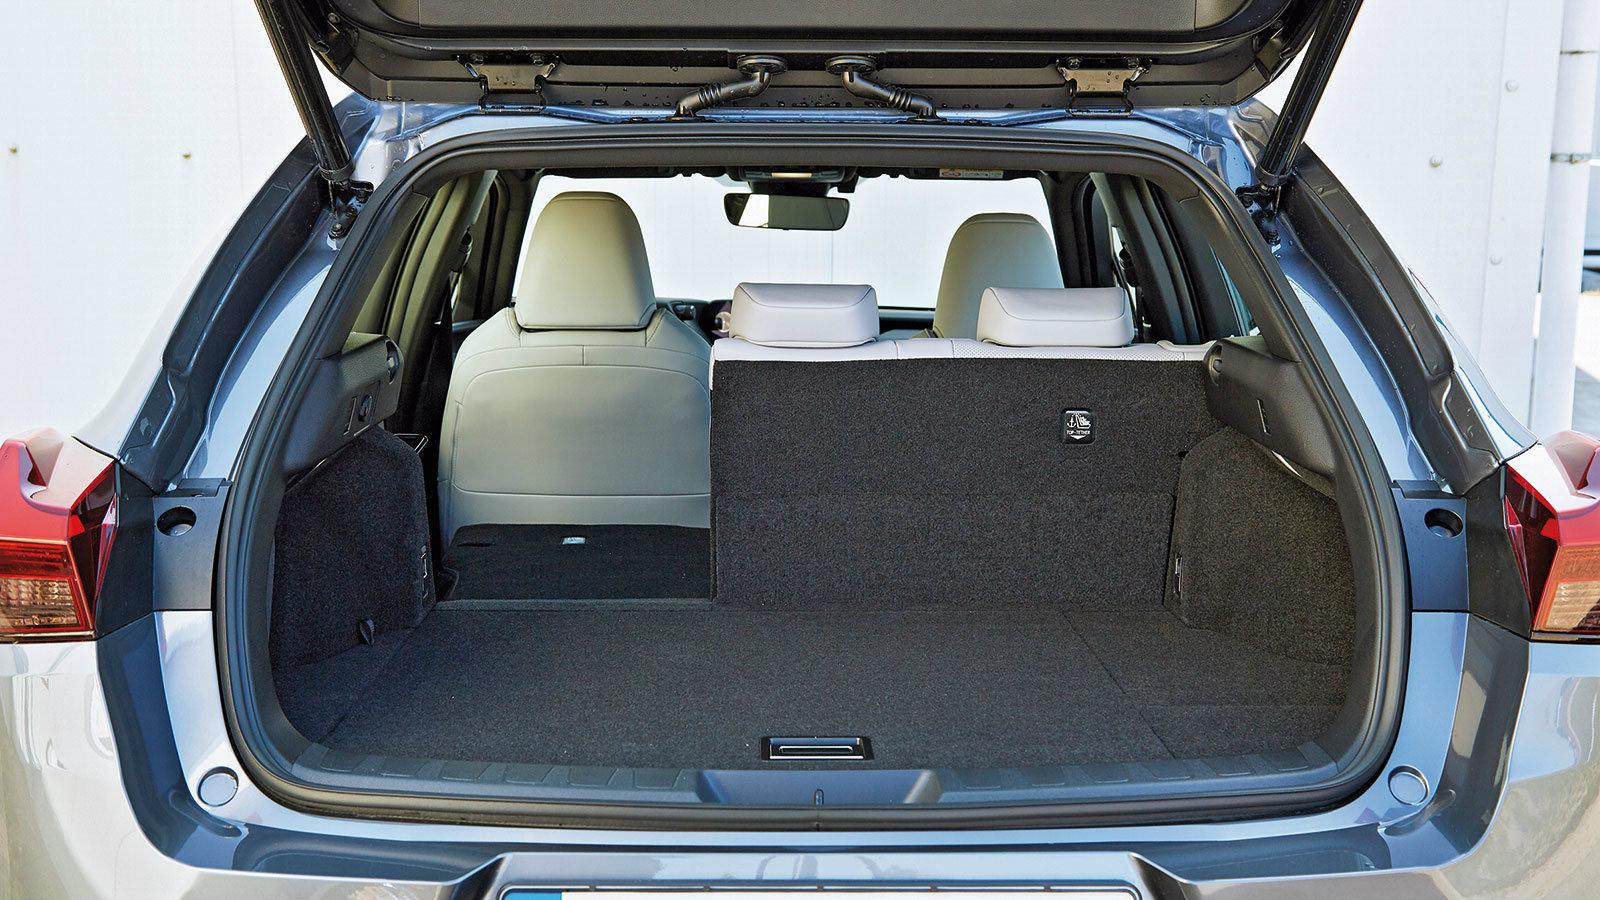 Με μόνο 320 λίτρα χώρο φόρτωσης και υψηλό κατώφλι φόρτωσης συνάμα, ένα είναι σίγουρο: ο χώρος αποσκευών του Lexus δεν συγκαταλέγεται στα δυνατά του σημεία.